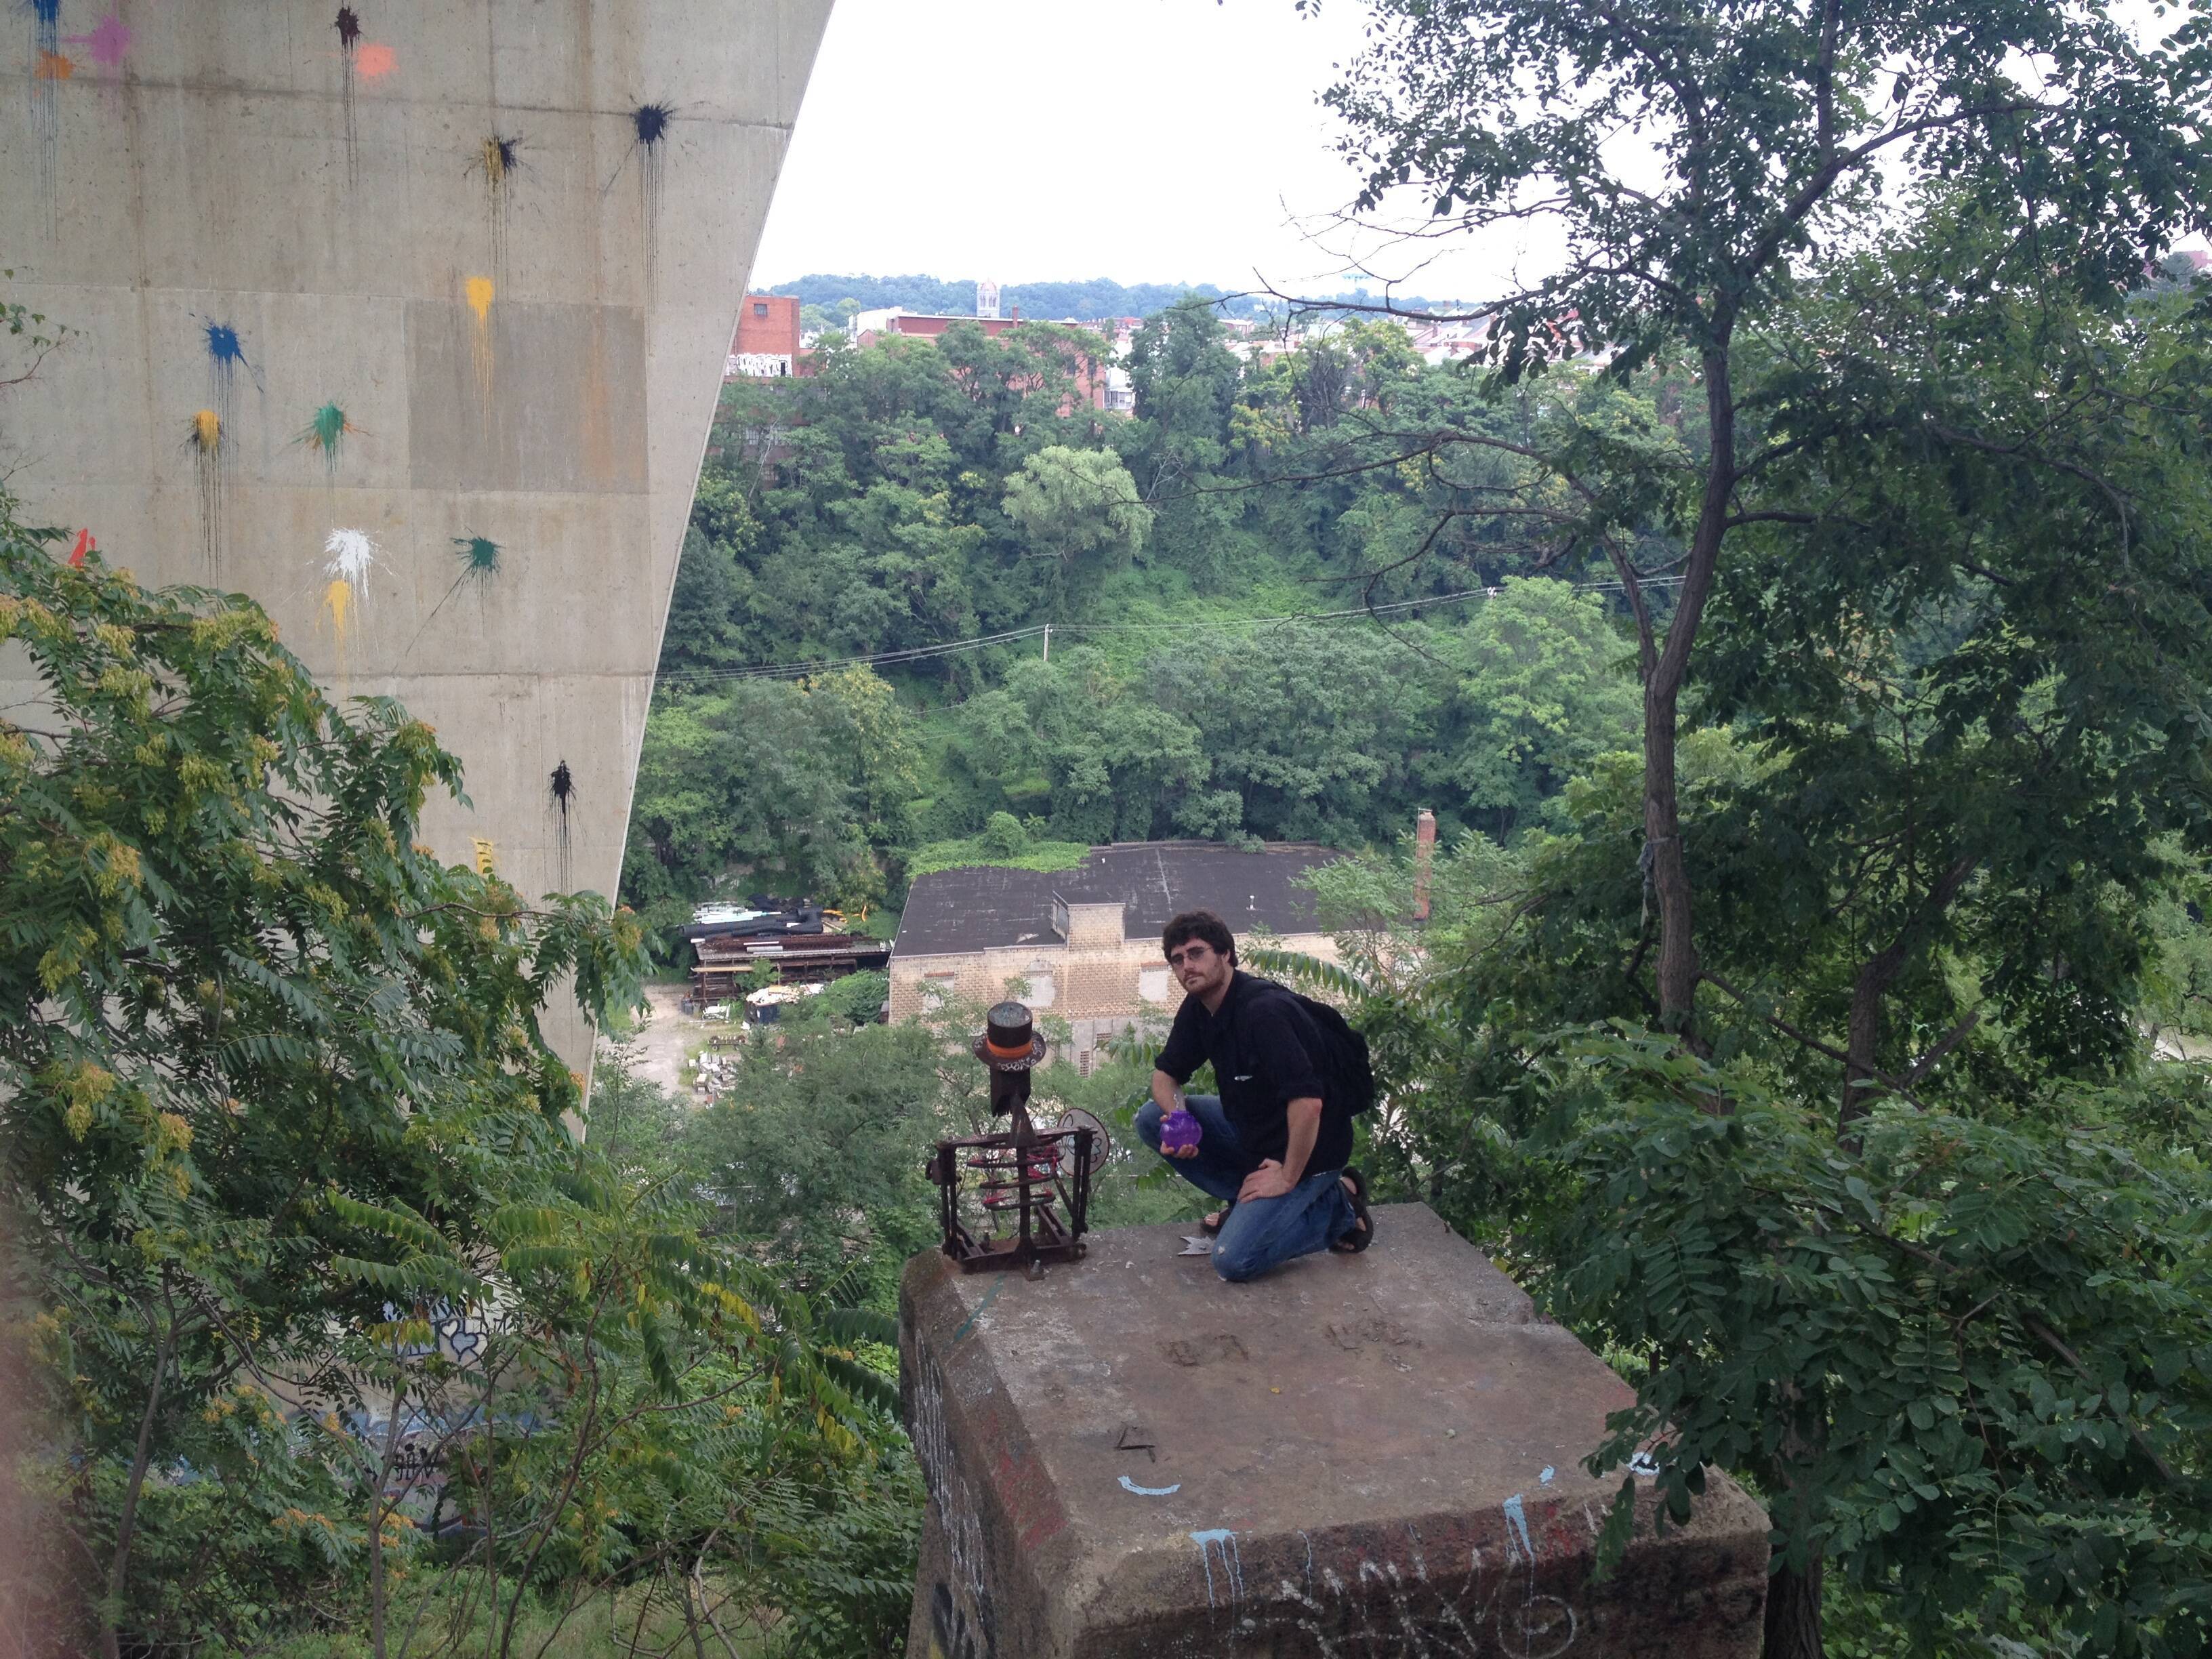 Friend Matt O. appreciating a pirate sculpture underneath the Bloomfield Bridge. (July 2016)